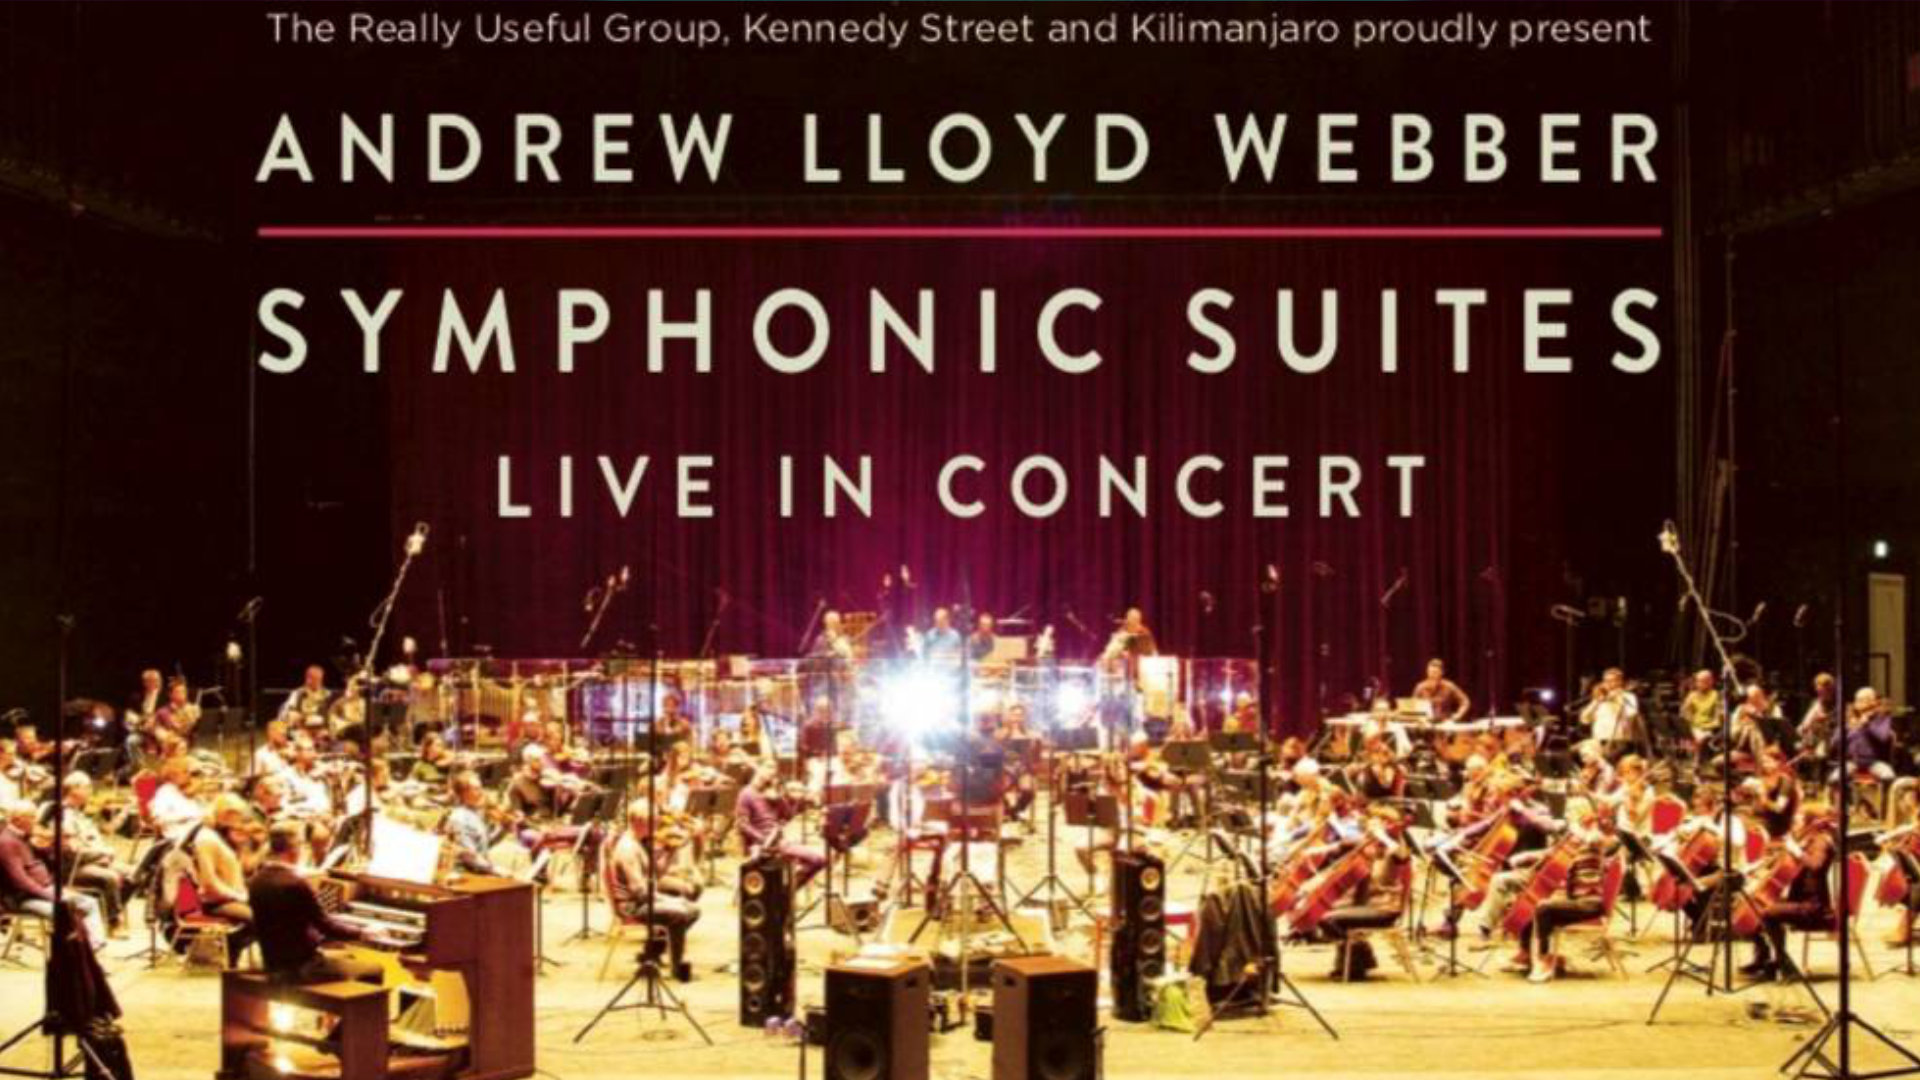 Andrew Lloyd Webber's Symphonic Suites live concert tour announced